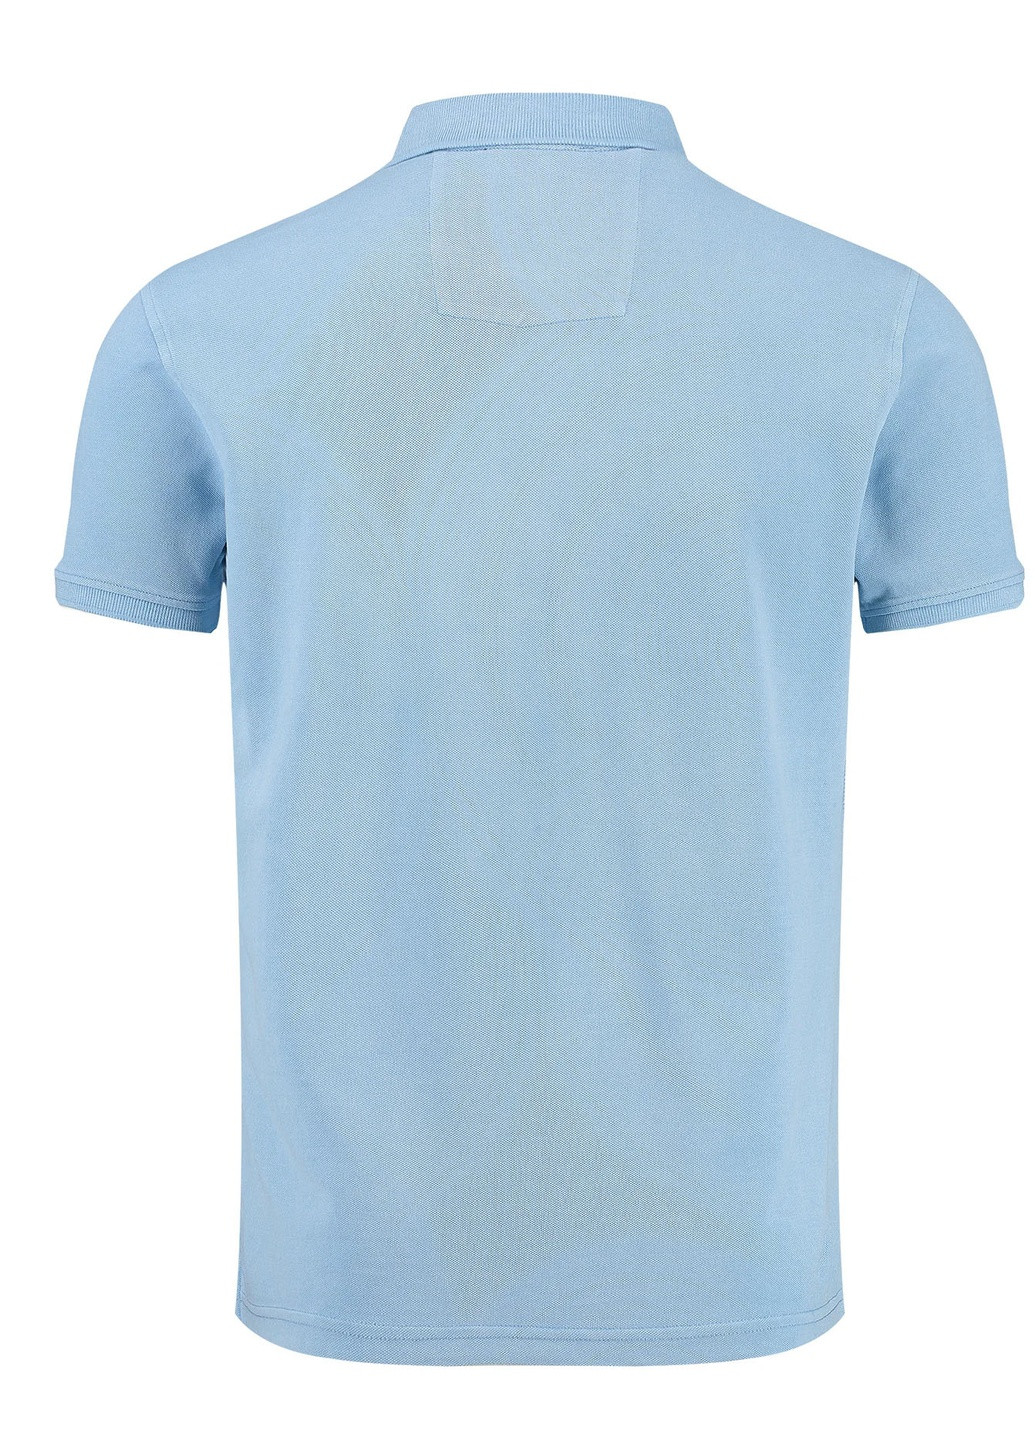 Голубой футболка-поло для мужчин Key Largo